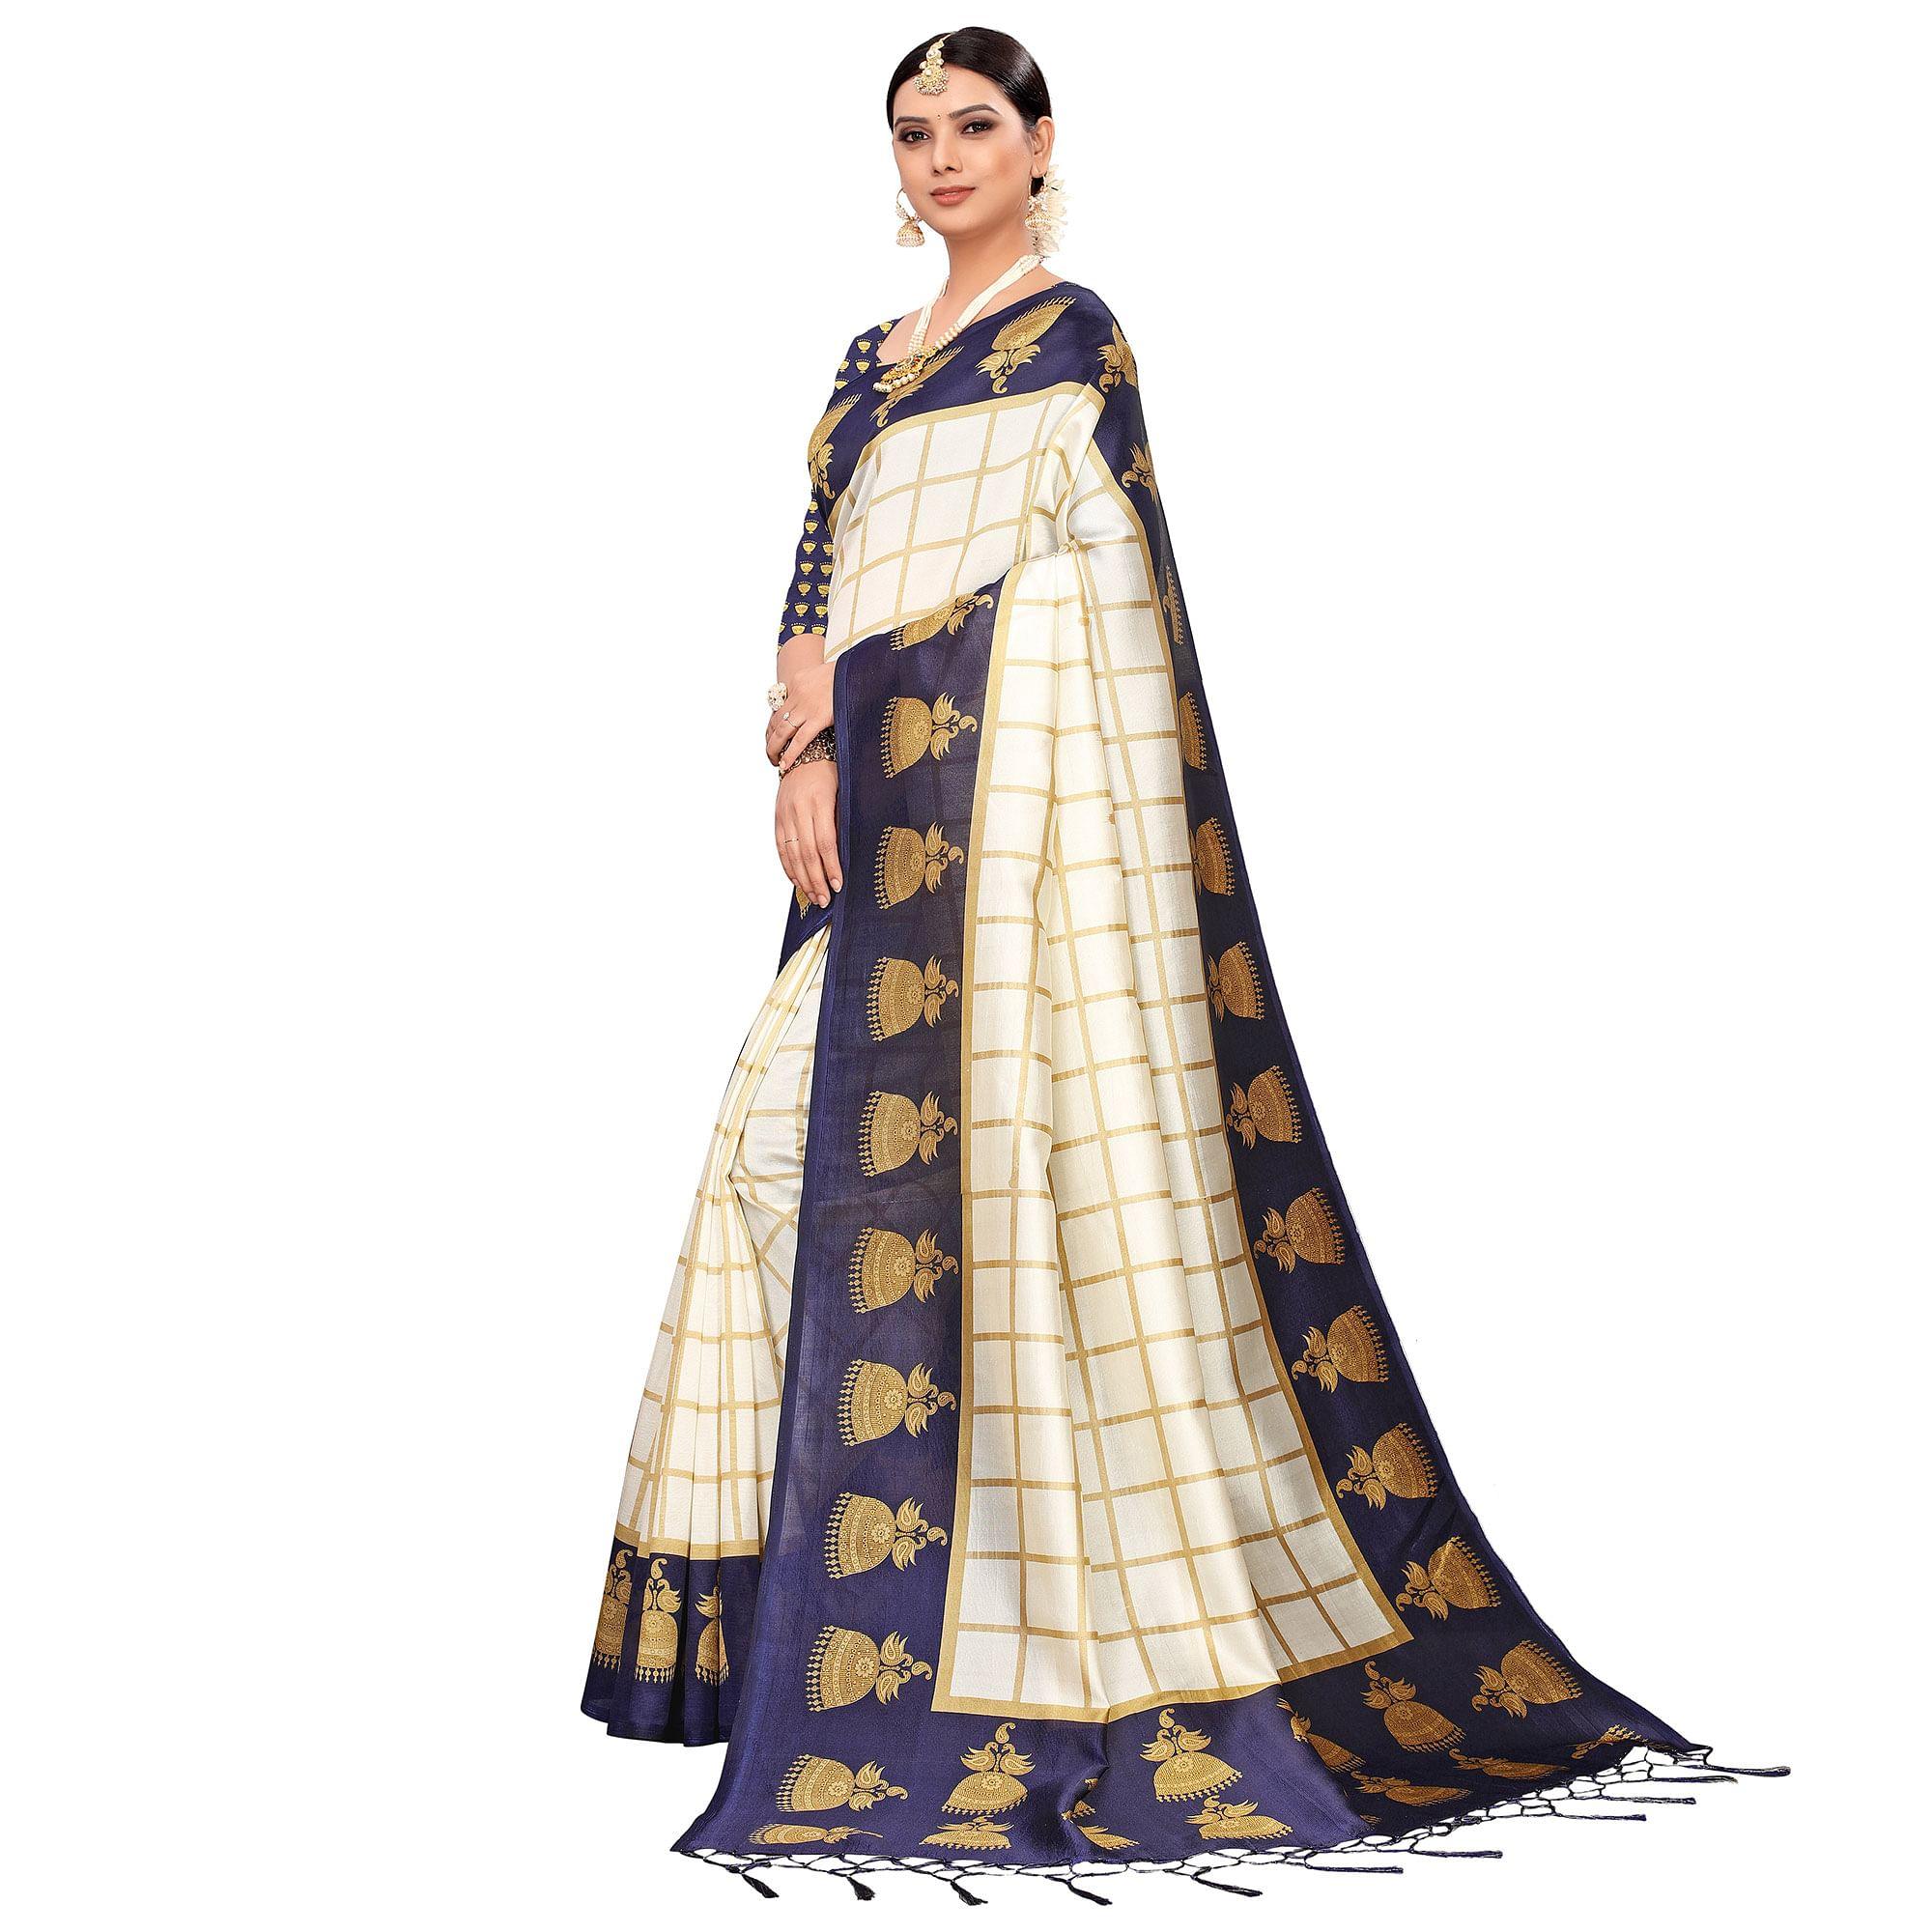 Delightful Off White-Navy Blue Colored Festive Wear Printed Mysore Silk Saree - Peachmode